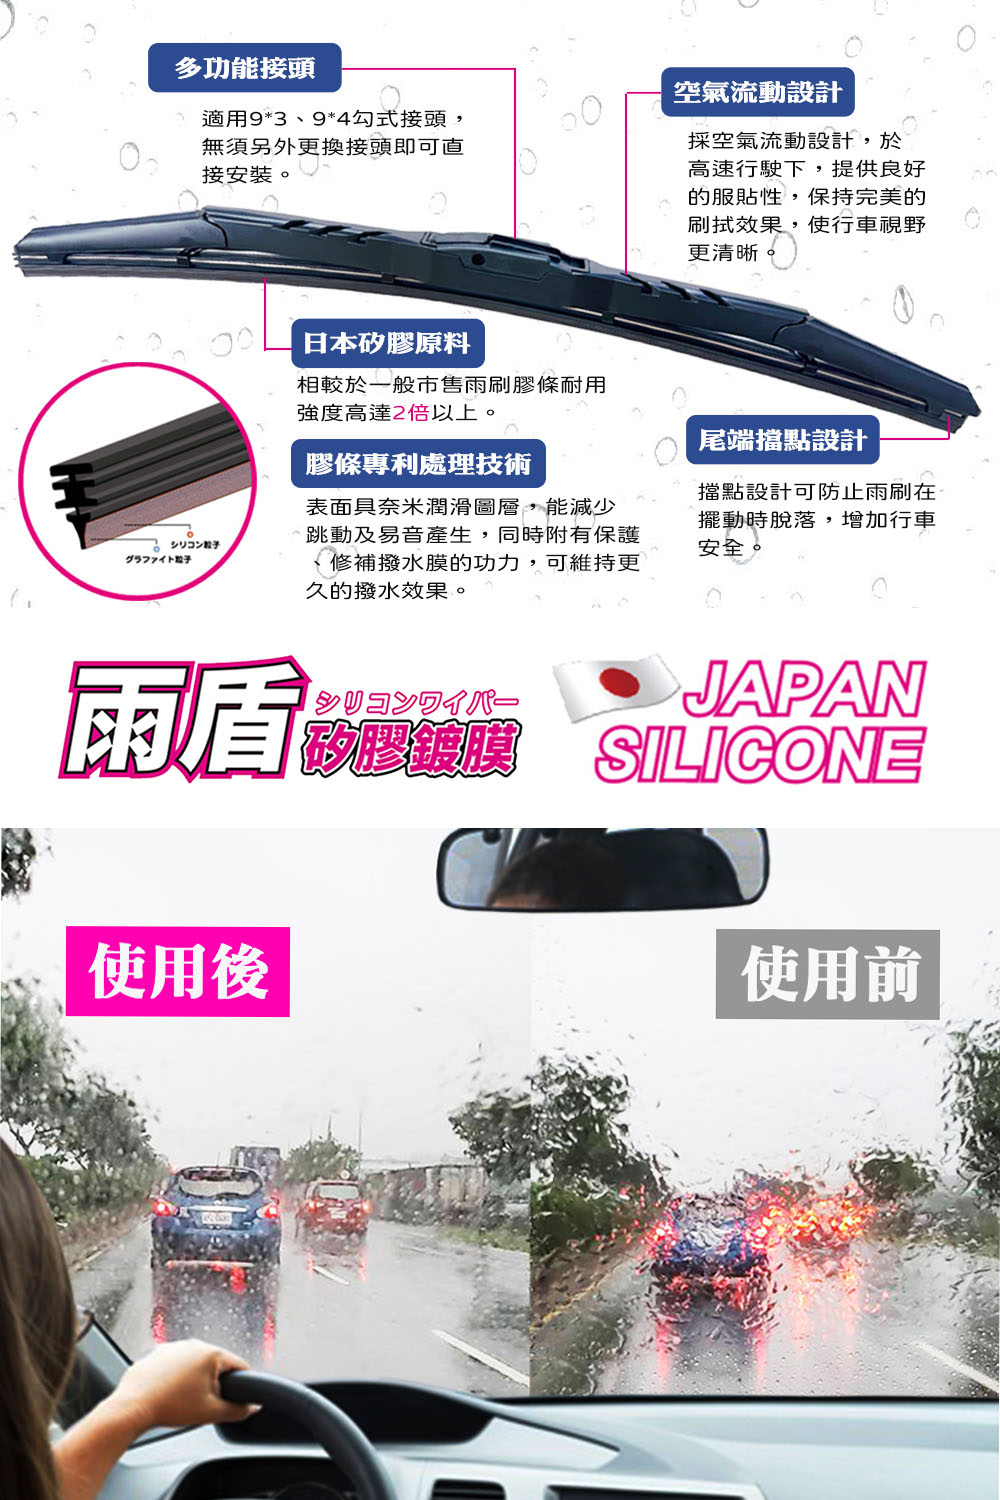 雨盾 Toyota Vios 各代專用矽膠鍍膜雨刷(日本膠條